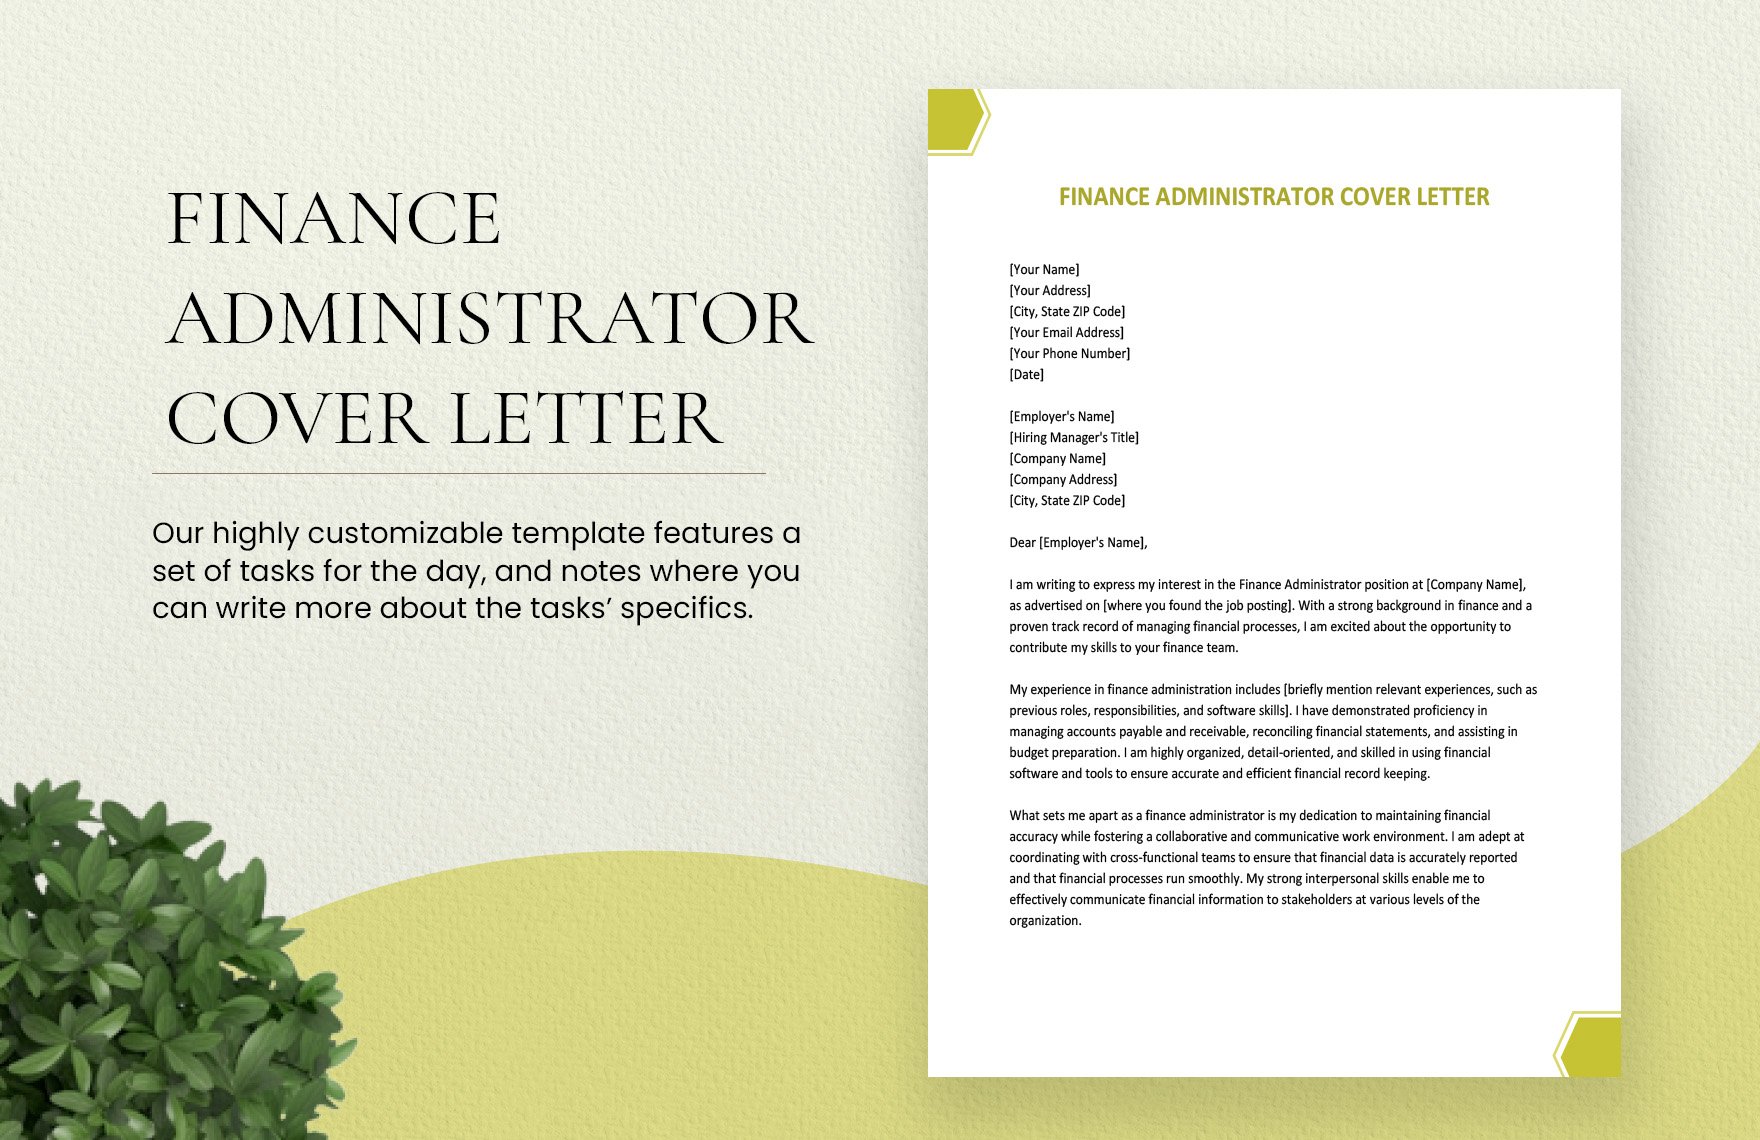 Finance Administrator Cover Letter